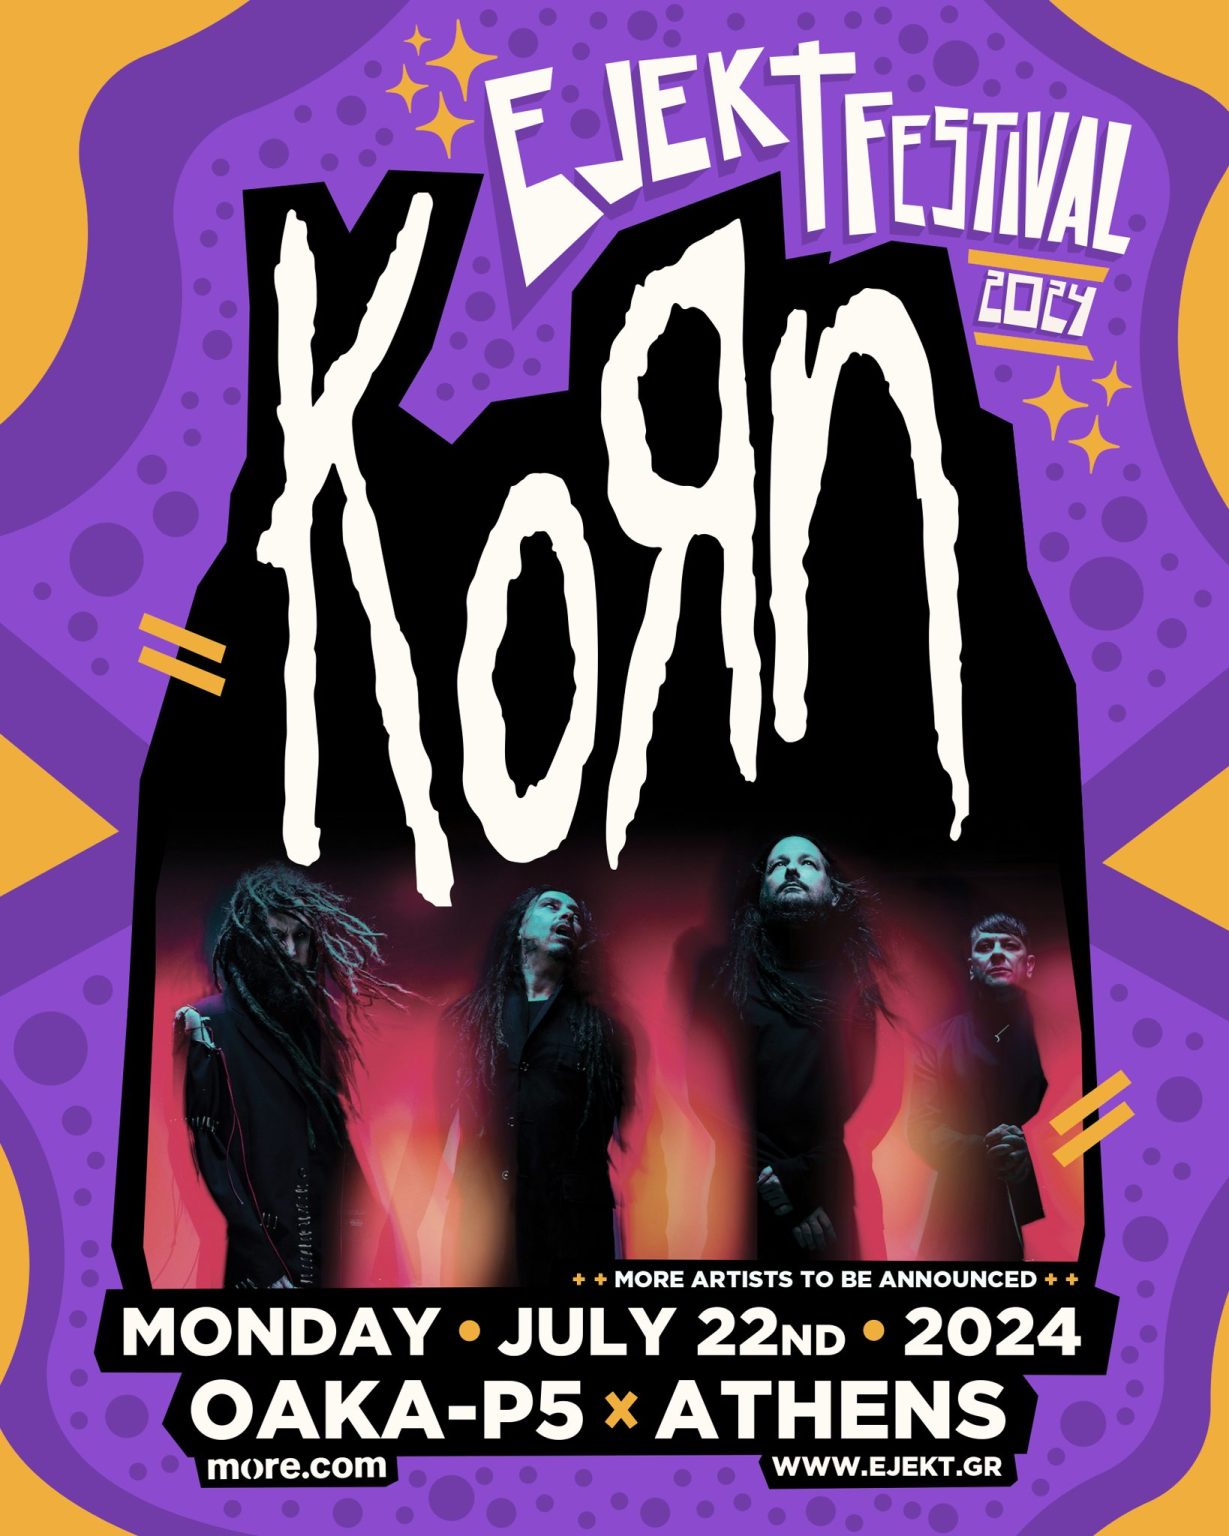 Οι Korn στο ΟΑΚΑ για το Ejekt Festival 2024!